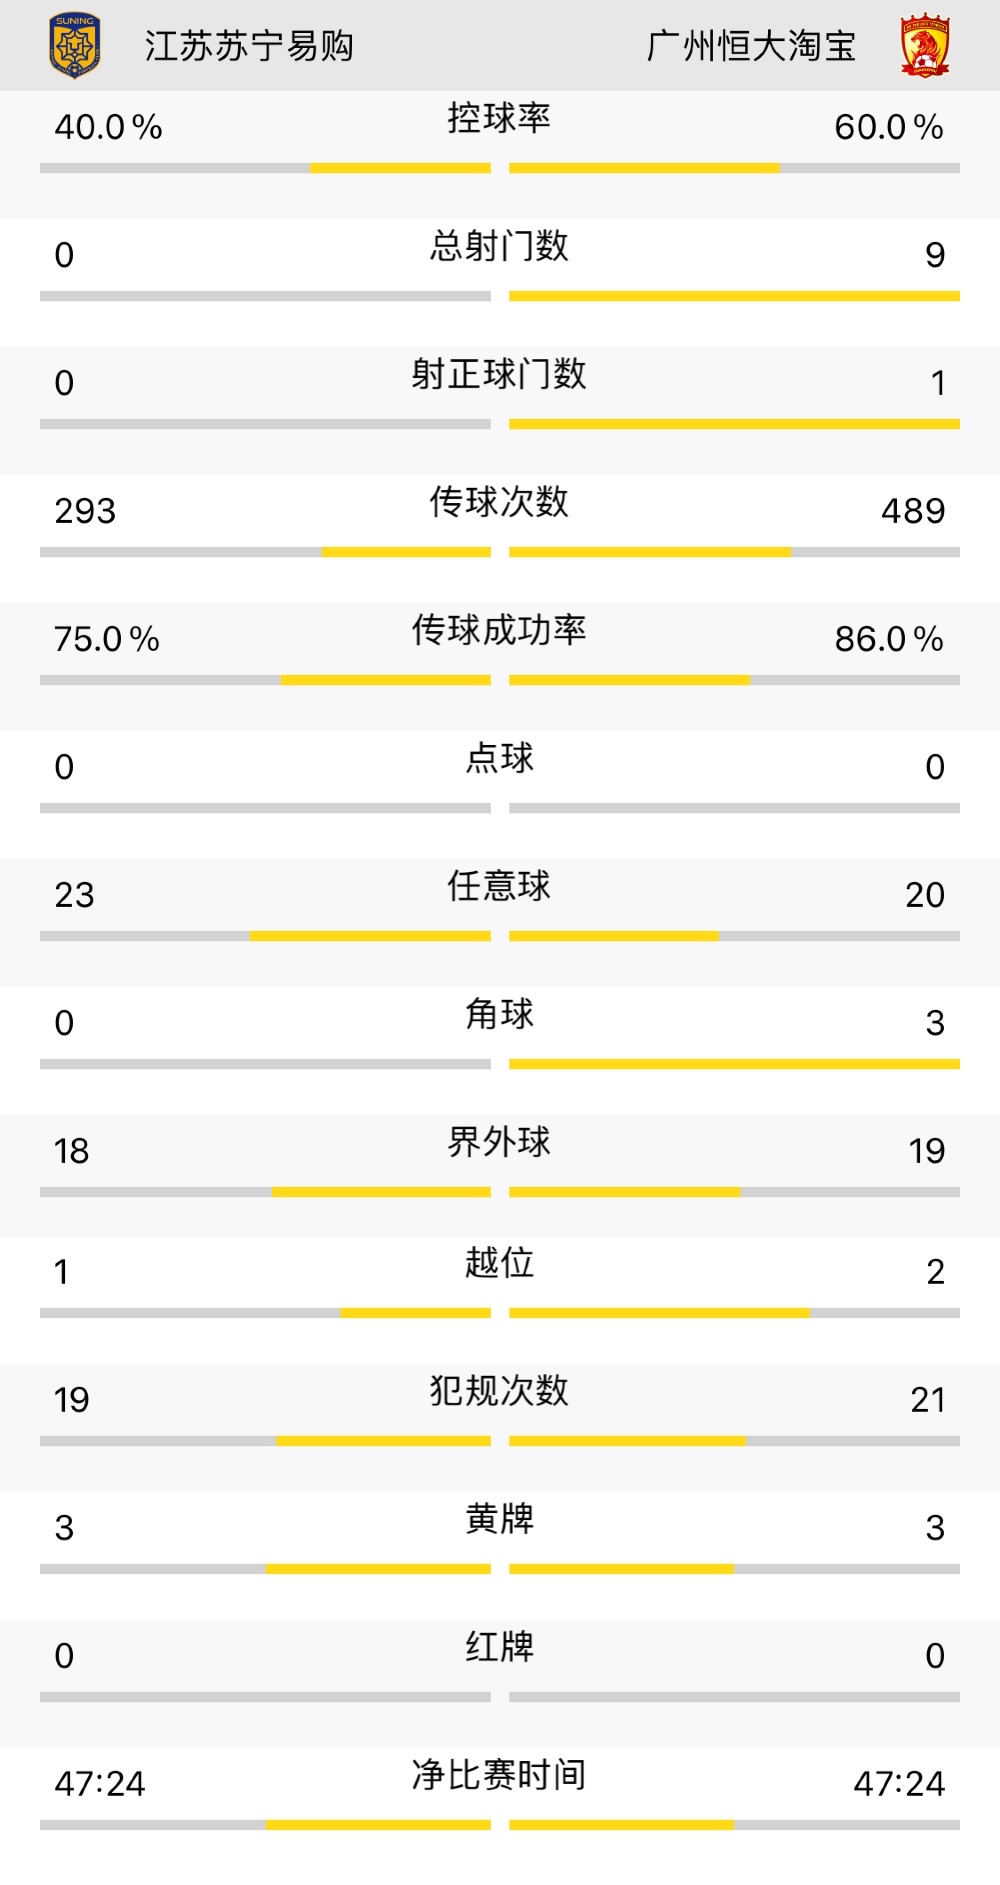 广州恒大与江苏苏宁的官方比赛数据。